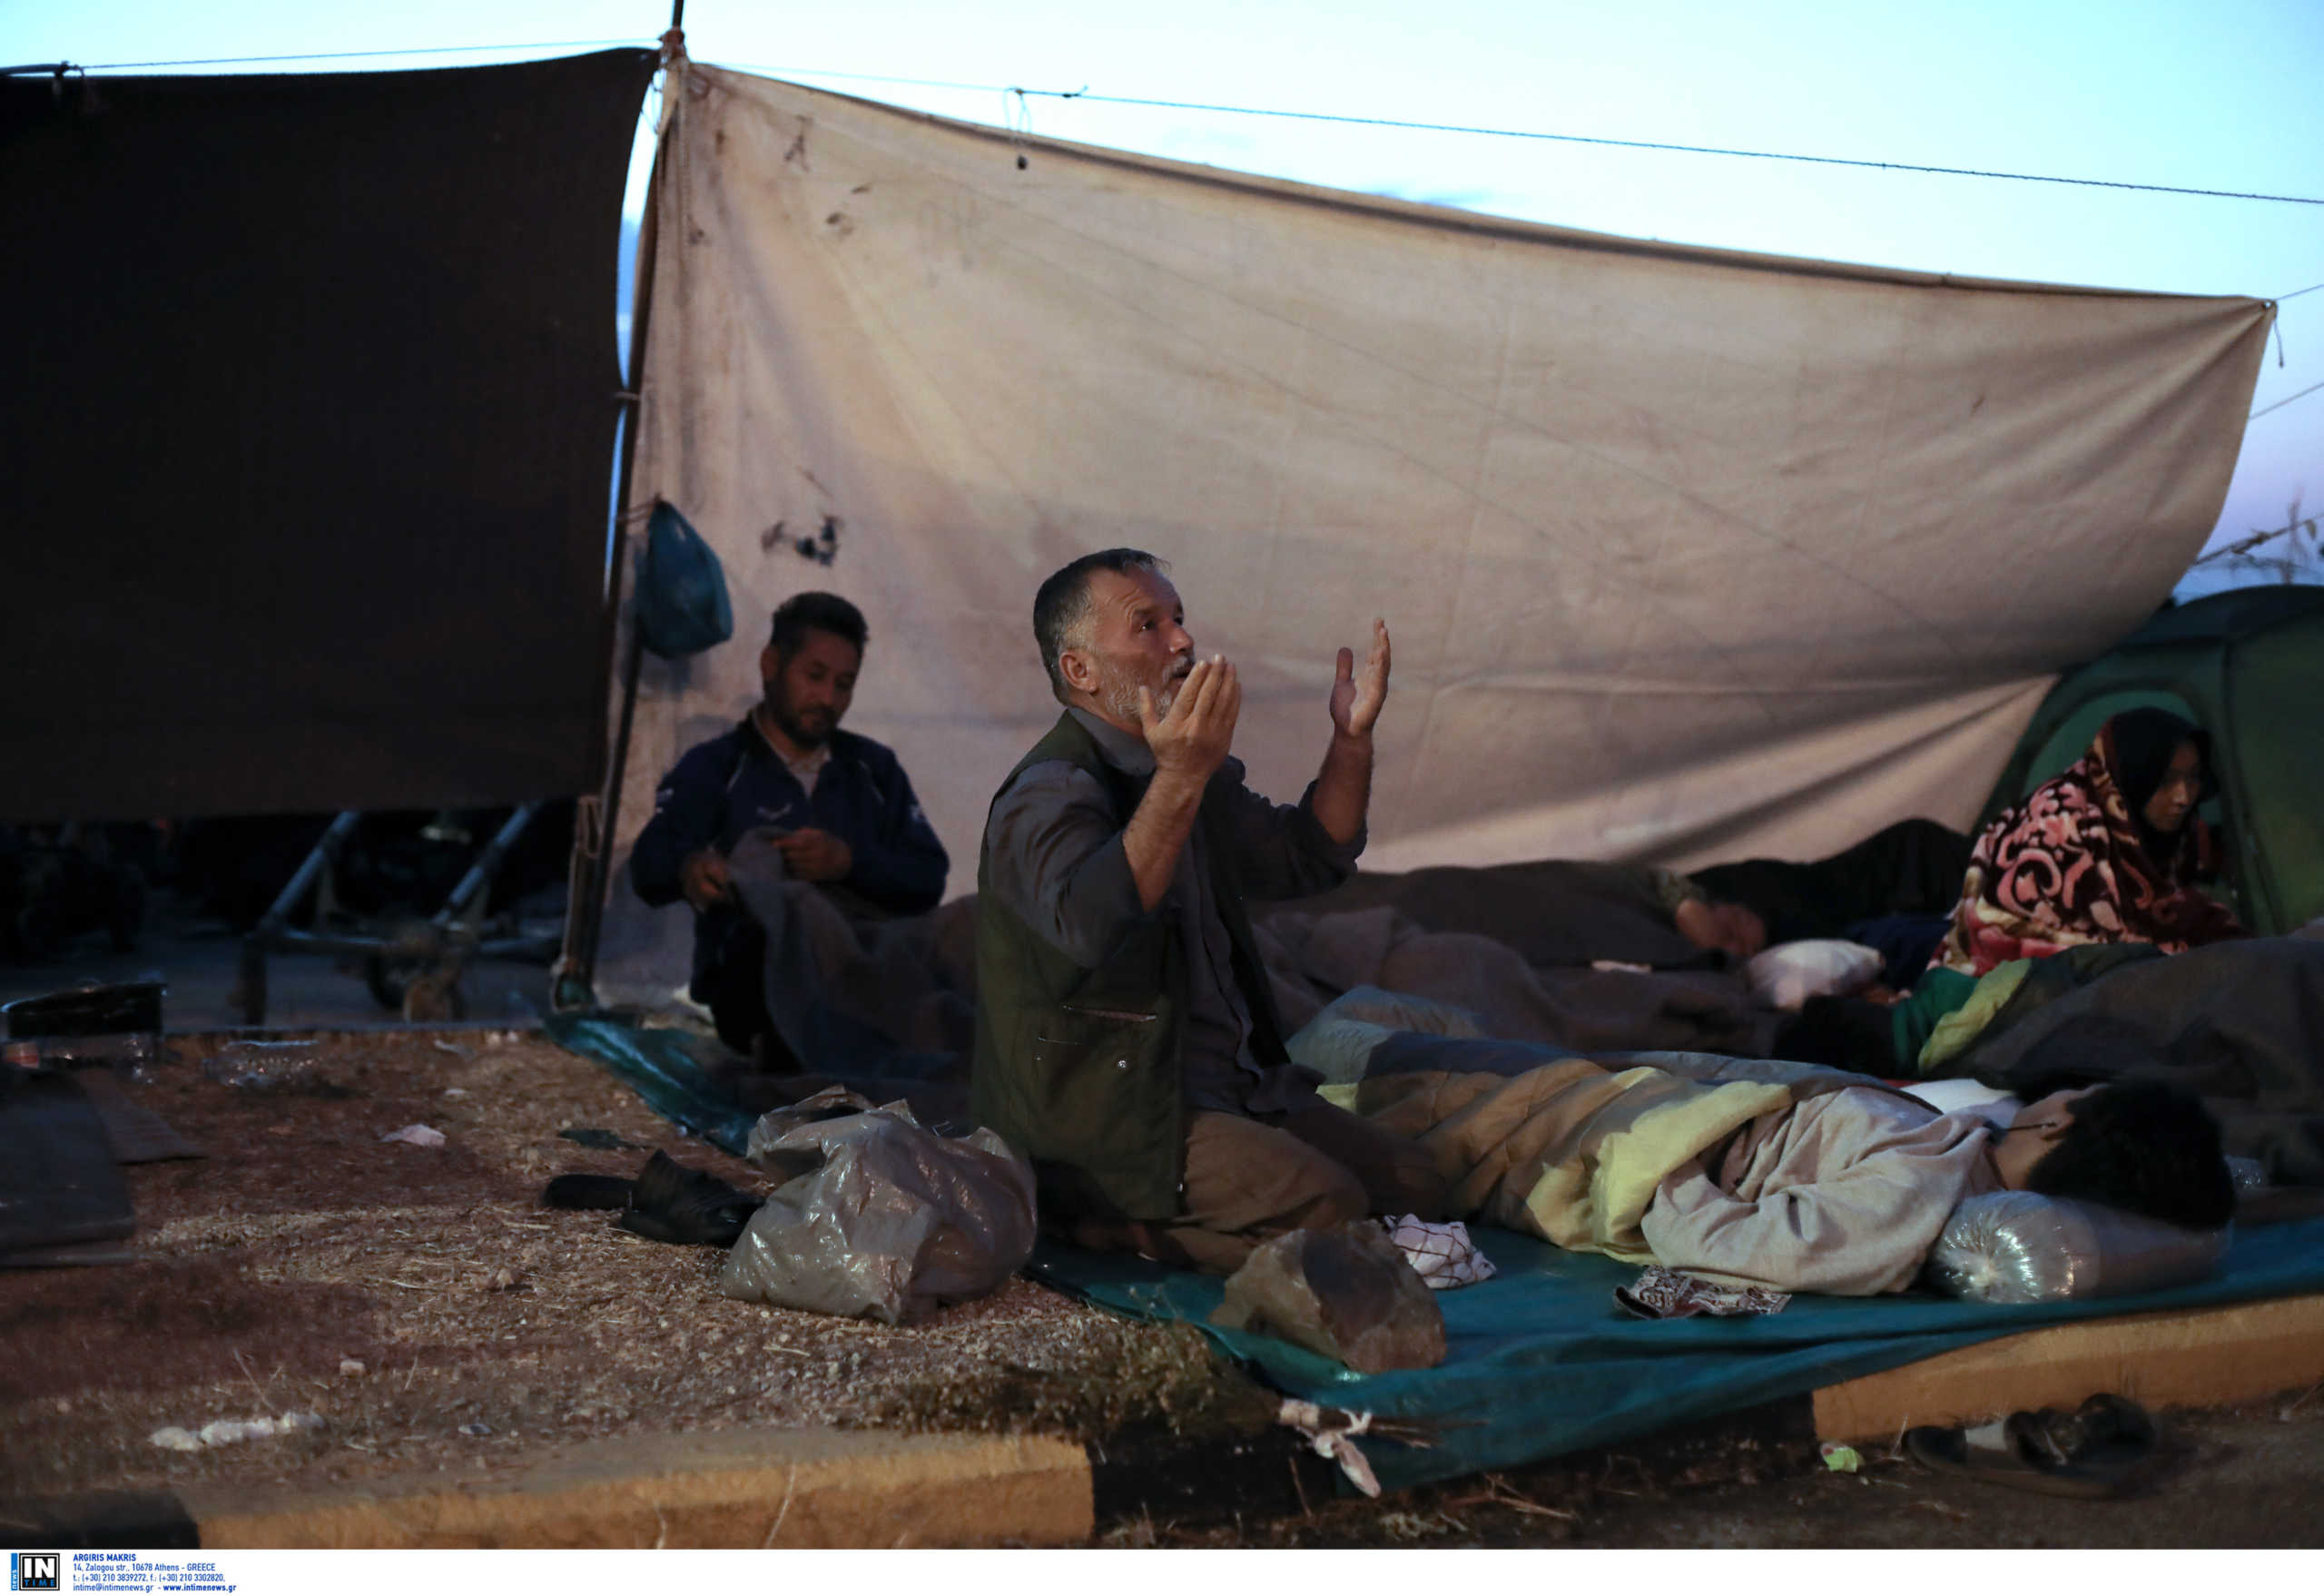 Λέσβος: Νέες θλιβερές εικόνες με πρόσφυγες και μετανάστες! Αυξάνονται τα κρούσματα κορονοϊού (Φωτό και Βίντεο)